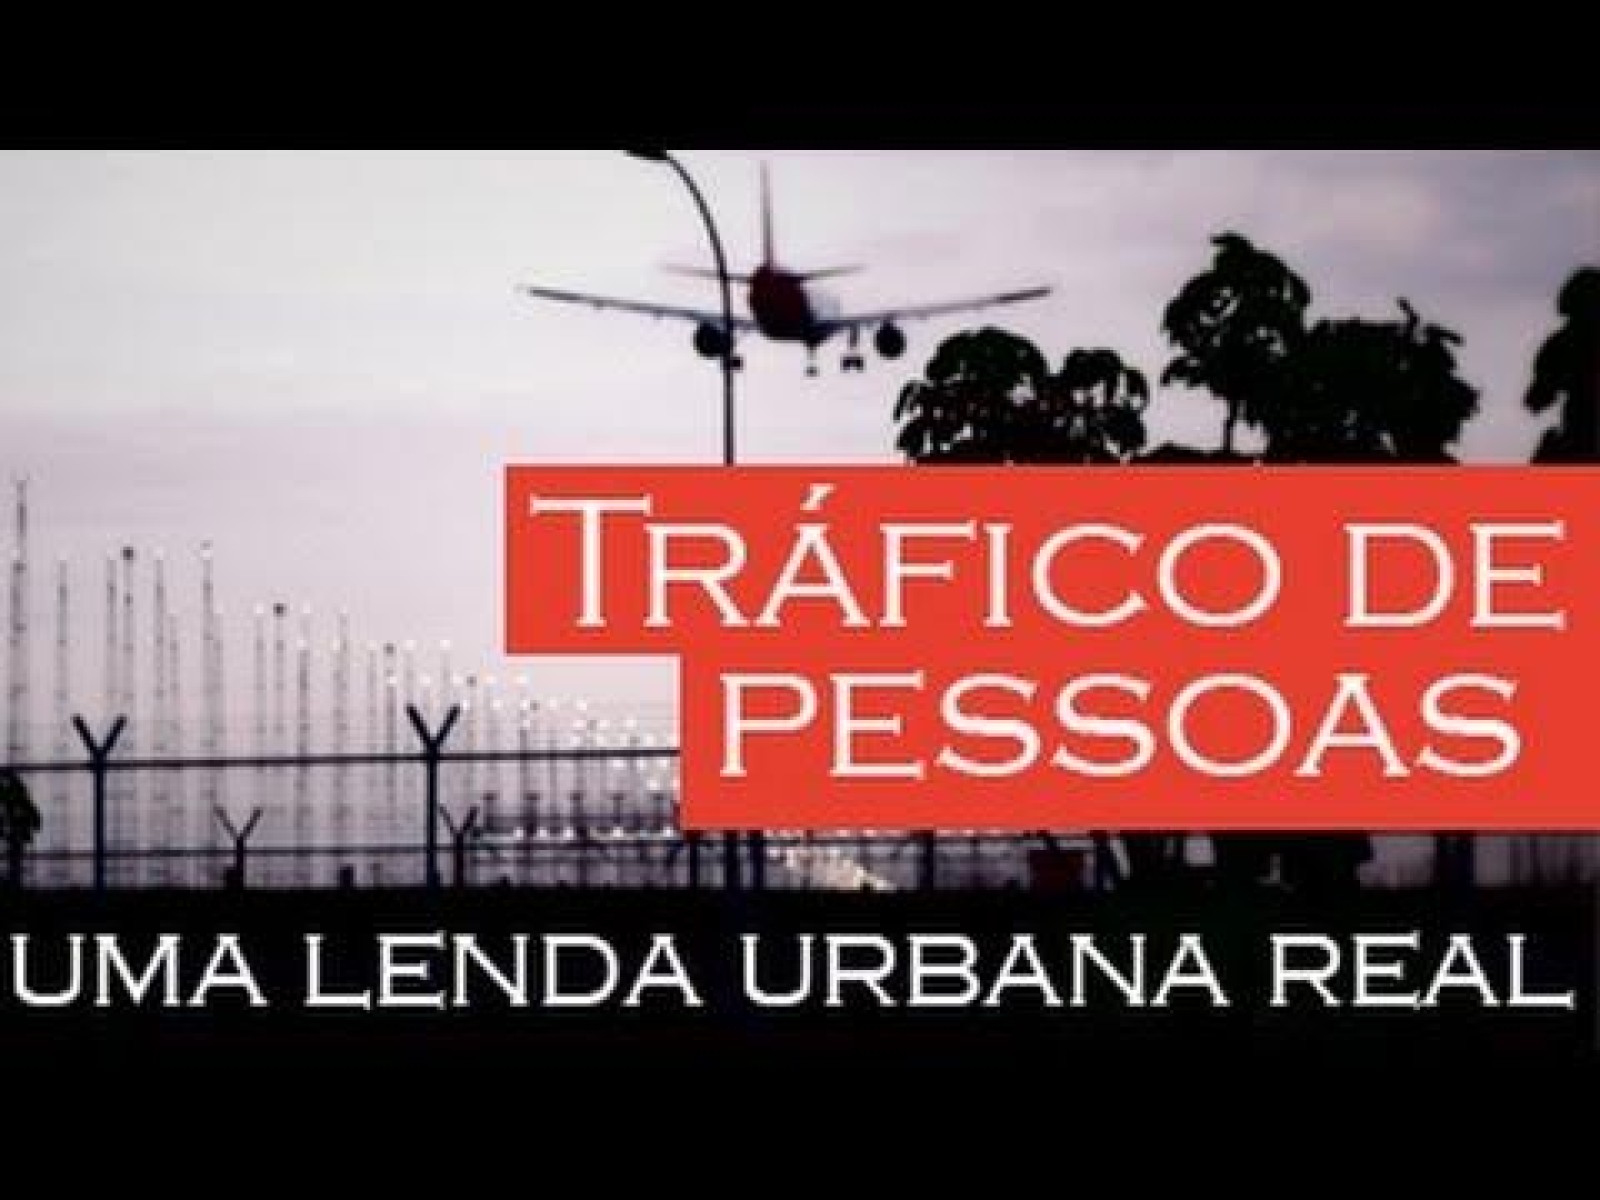 Tráfico de Pessoas - uma lenda urbana real